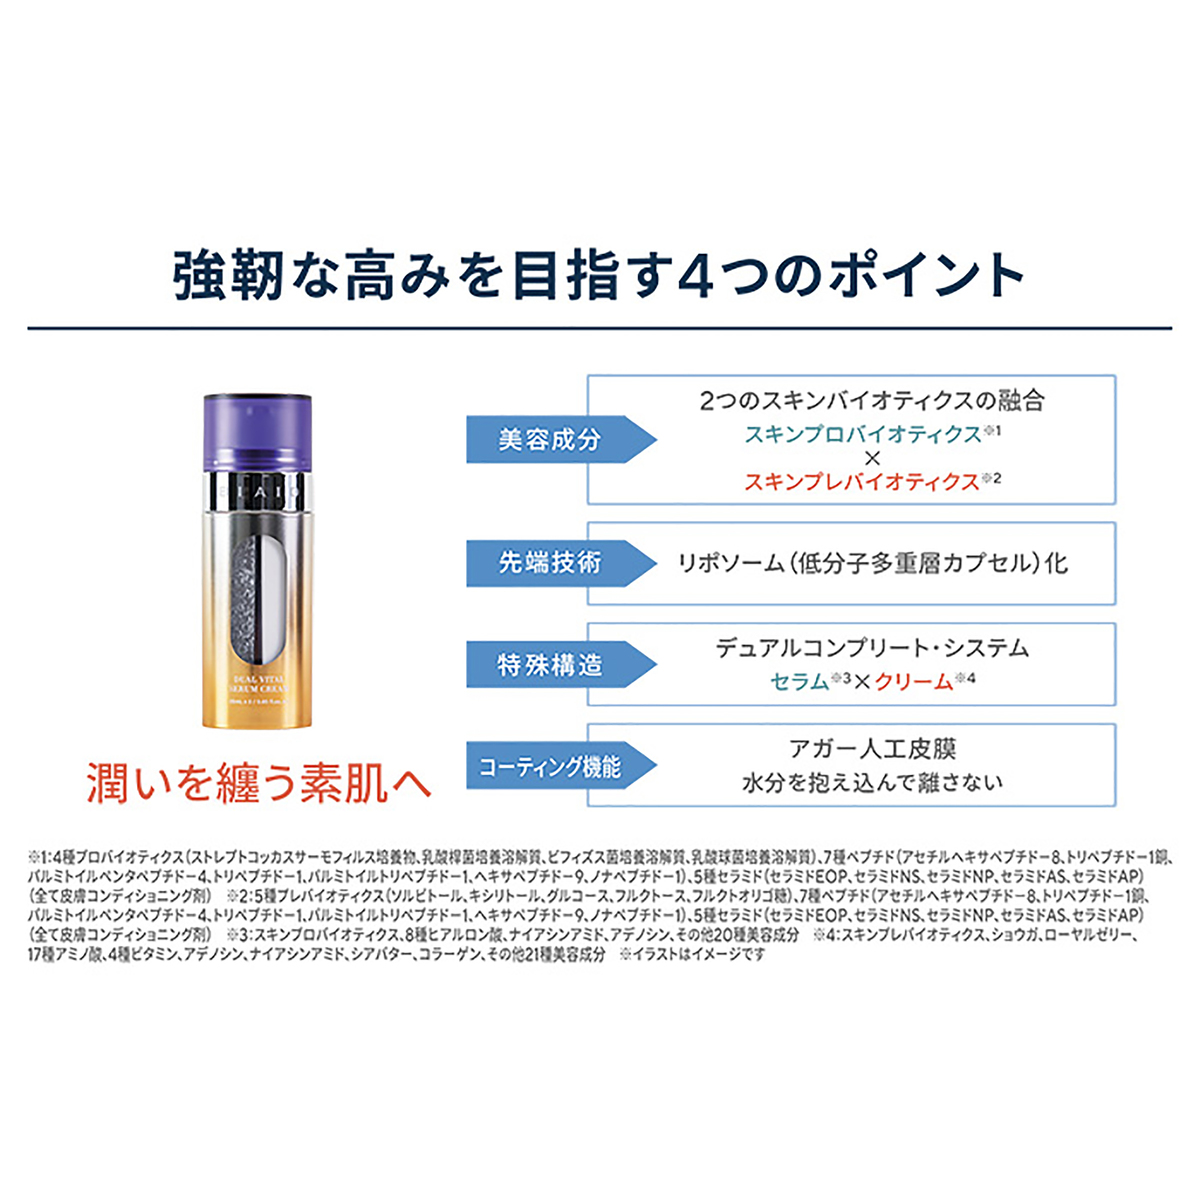 BIAID デュアルバイタルセラムクリーム 2個セット - QVC.jp